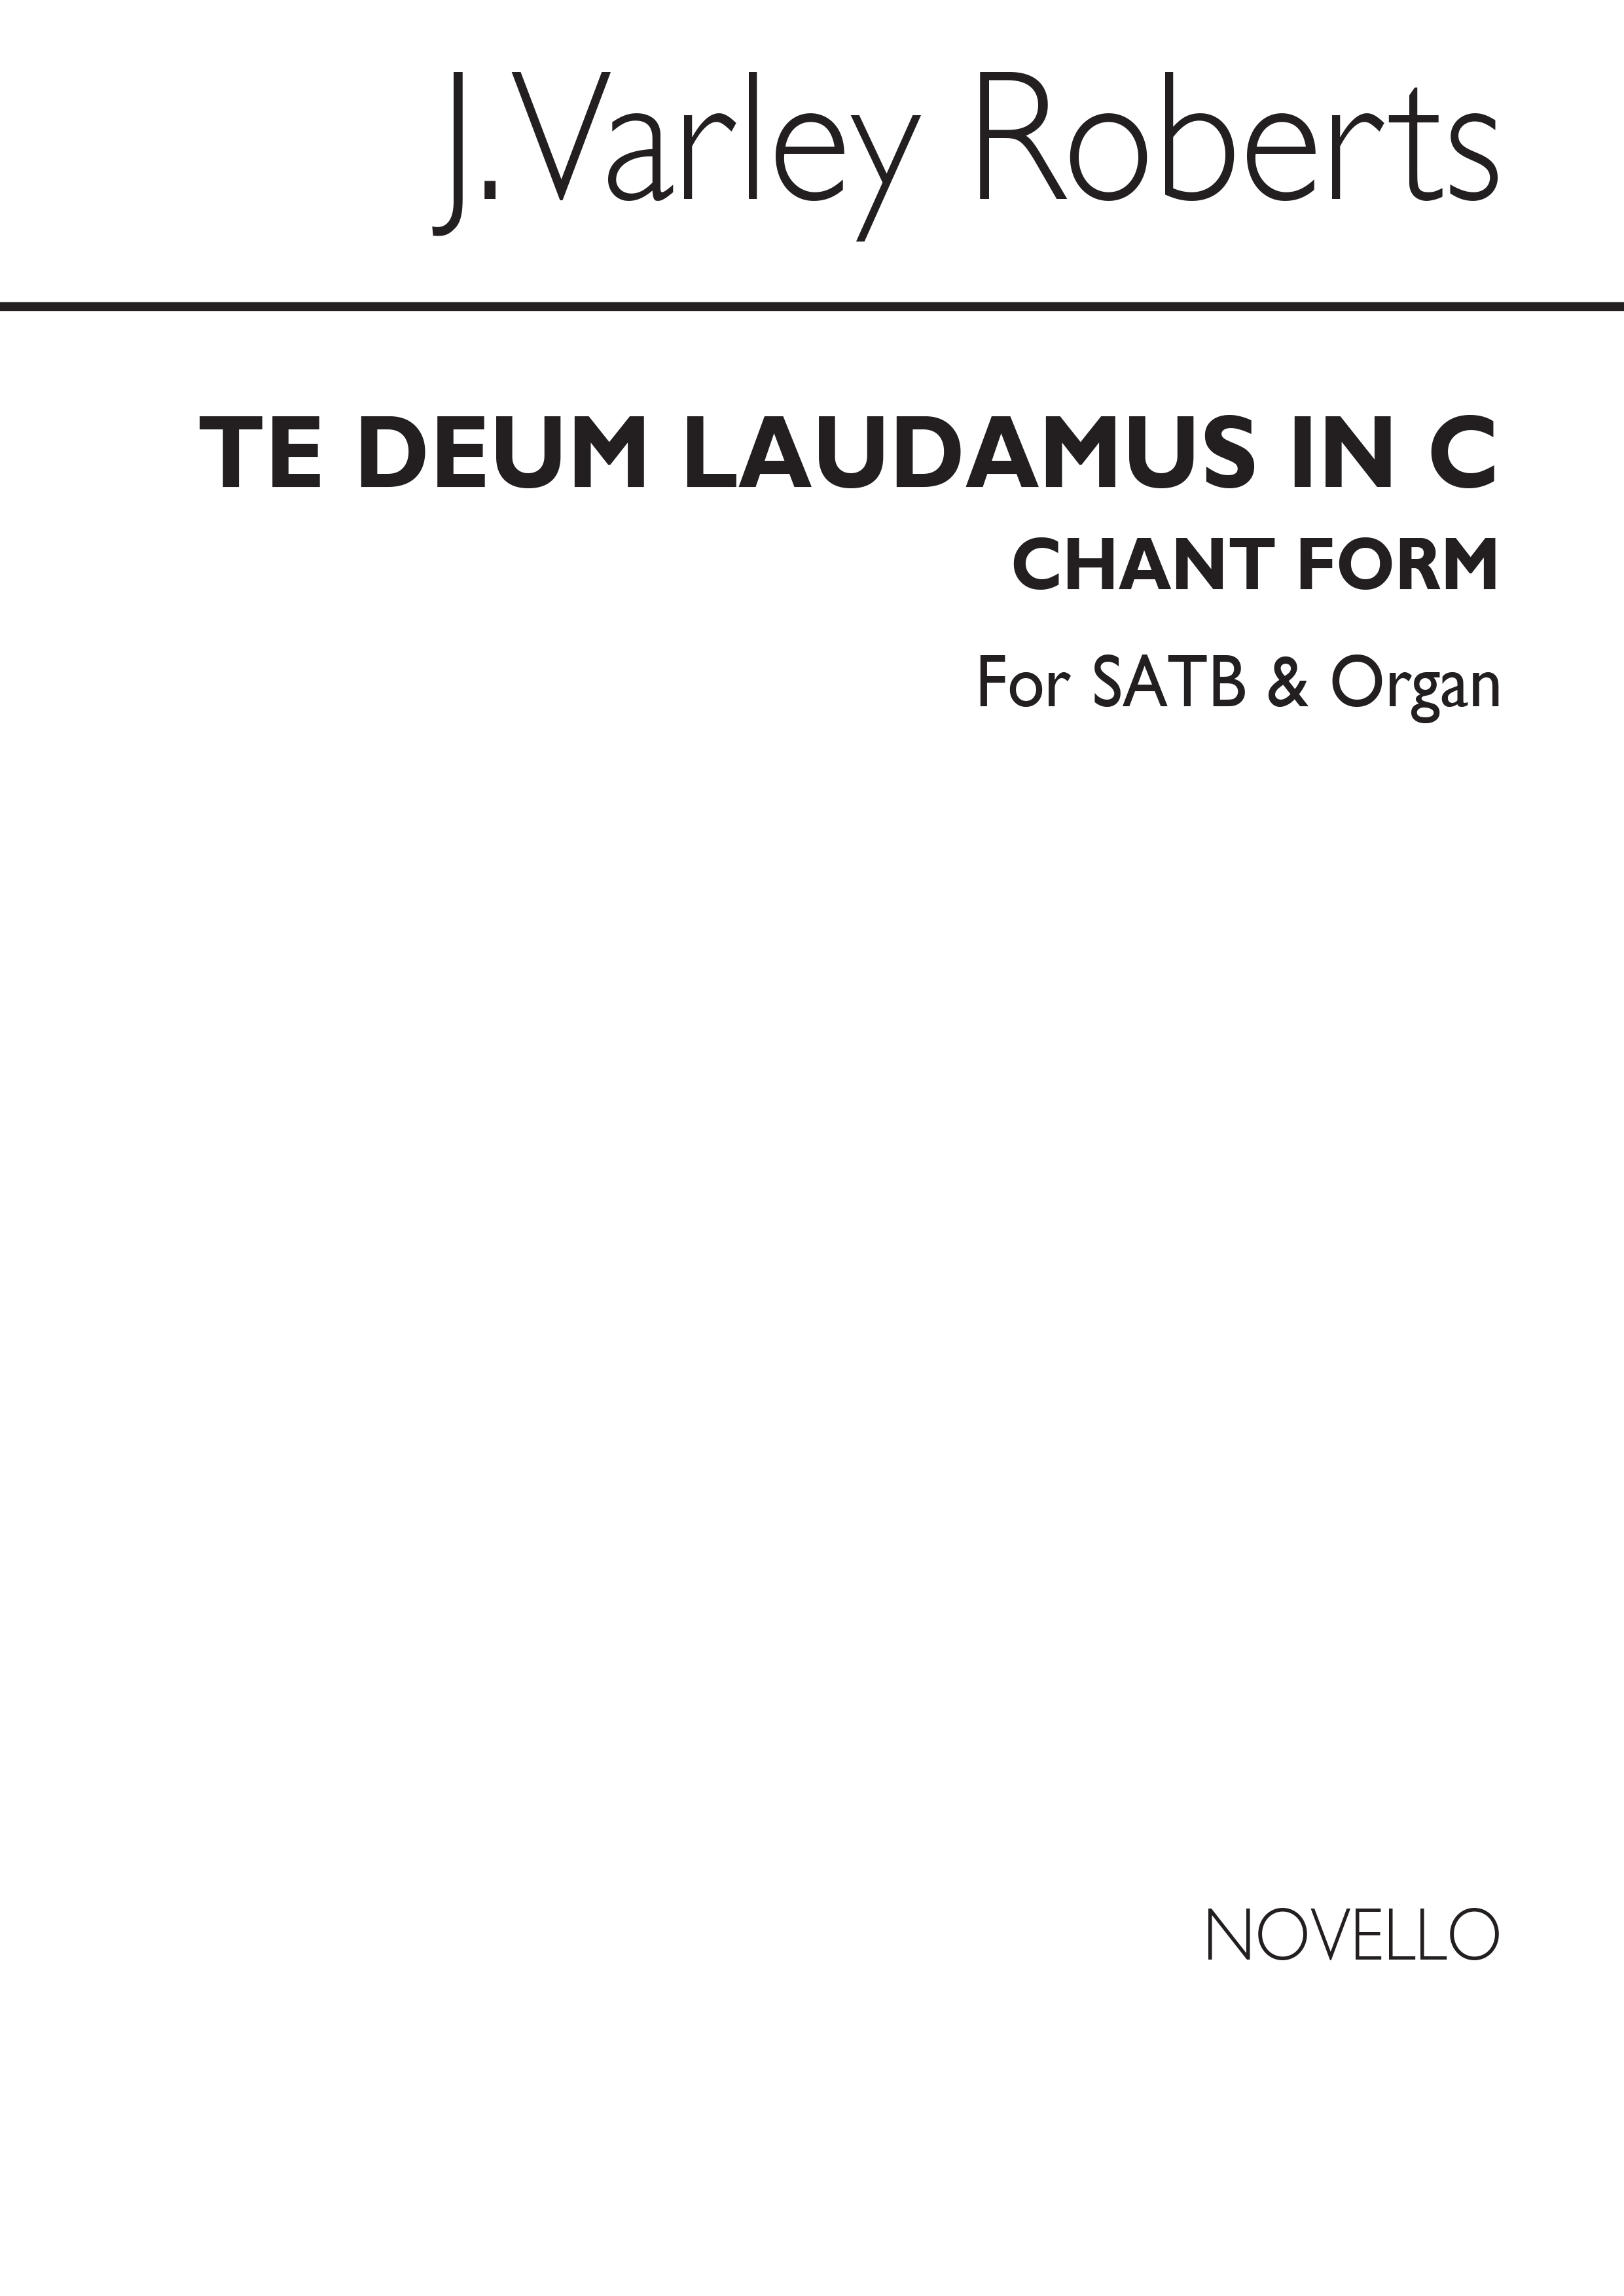 J. Varley Roberts: Te Deum Laudamus In C (Chant Form) SATB/Organ